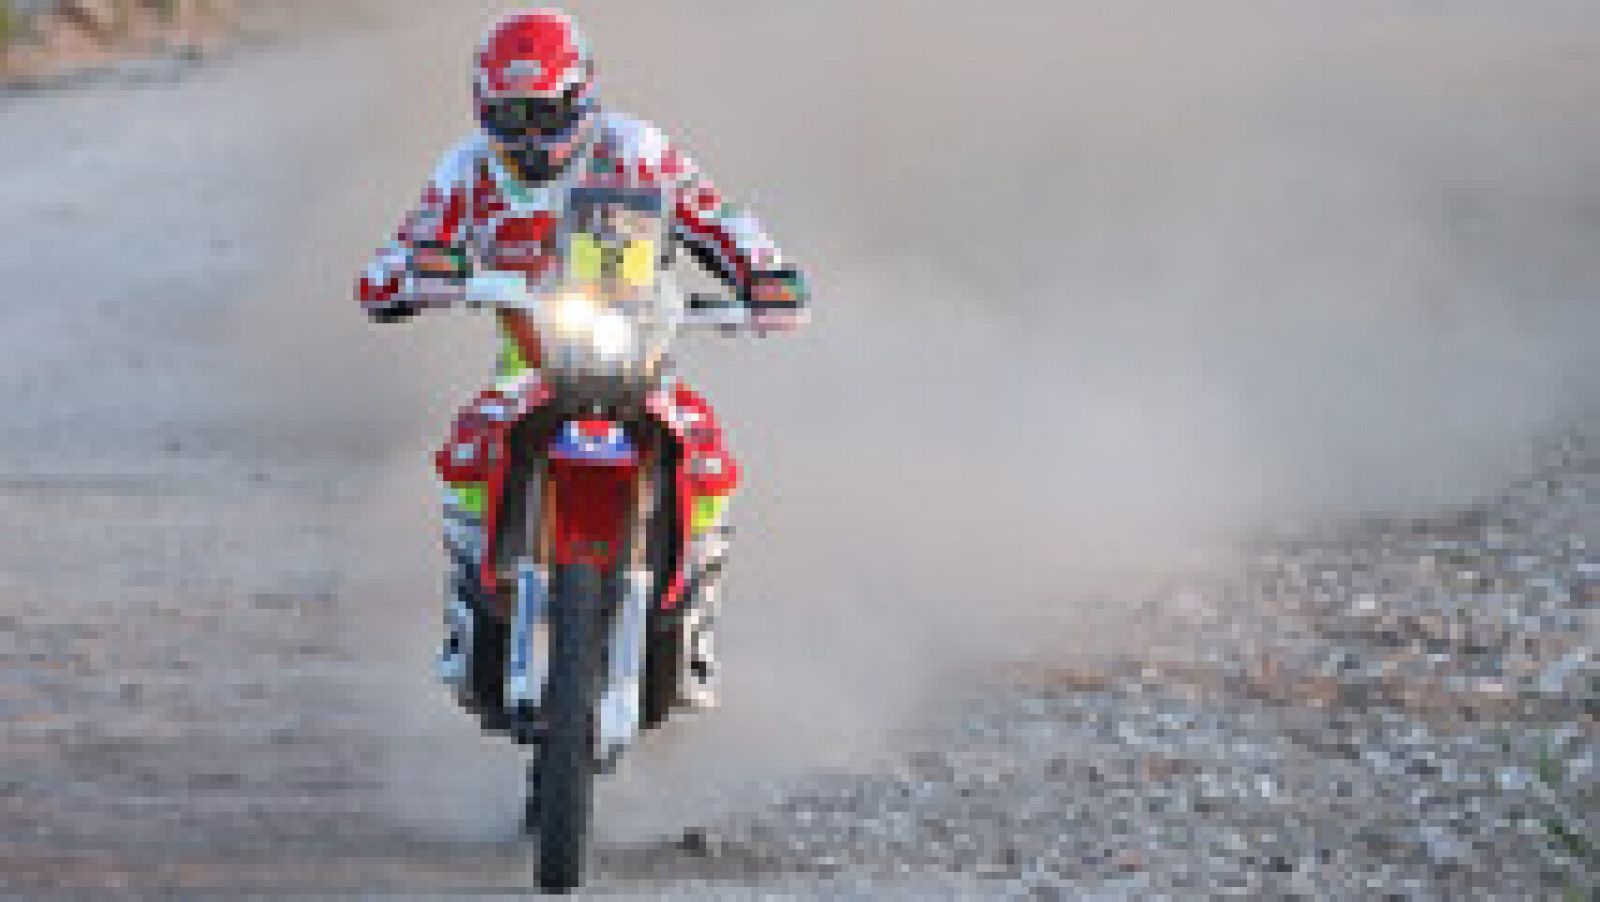 El piloto de motos español Joan Barreda (Honda) ha ganado la segunda etapa del Dakar, entre Villa Carlos Paz y San Juan, por delante de los portugueses Paulo Gonçalves (Honda) y Rubén Faría (KTM), y es el nuevo líder. En coches, el piloto catarí Nass